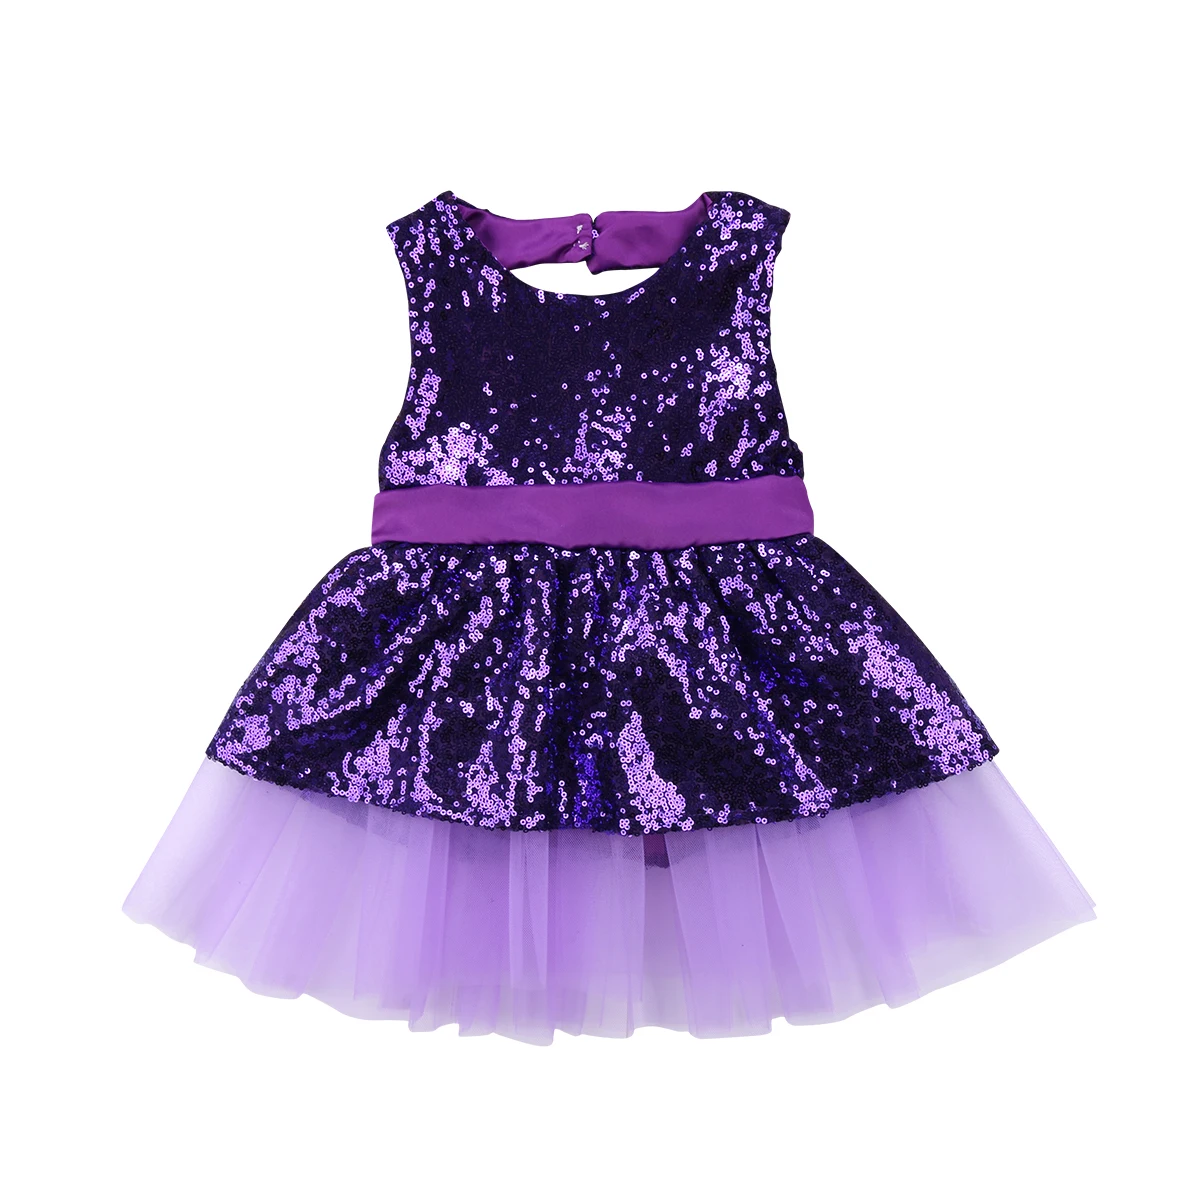 Одежда для детей; малышей; девочек Sequins майка, топ, жилет открытая спина, тюль платье праздничное платье принцессы, с бантом, пачка с бантом Открытое платье без рукавов - Цвет: Фиолетовый